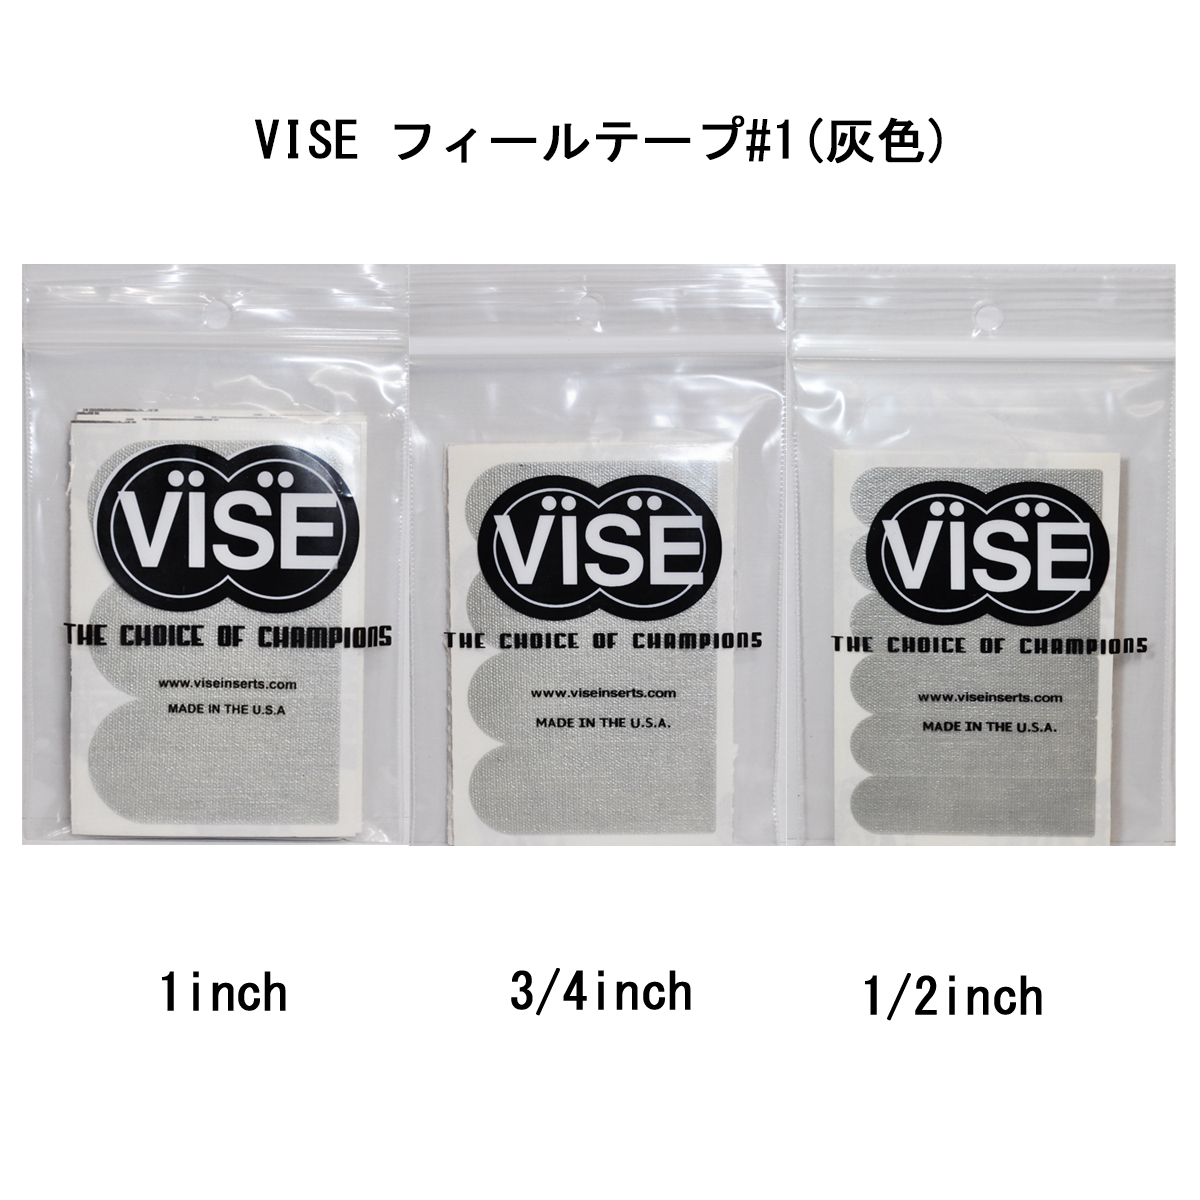 【12袋セット】VISE フィールテープ#1(灰色) - ウインドウを閉じる